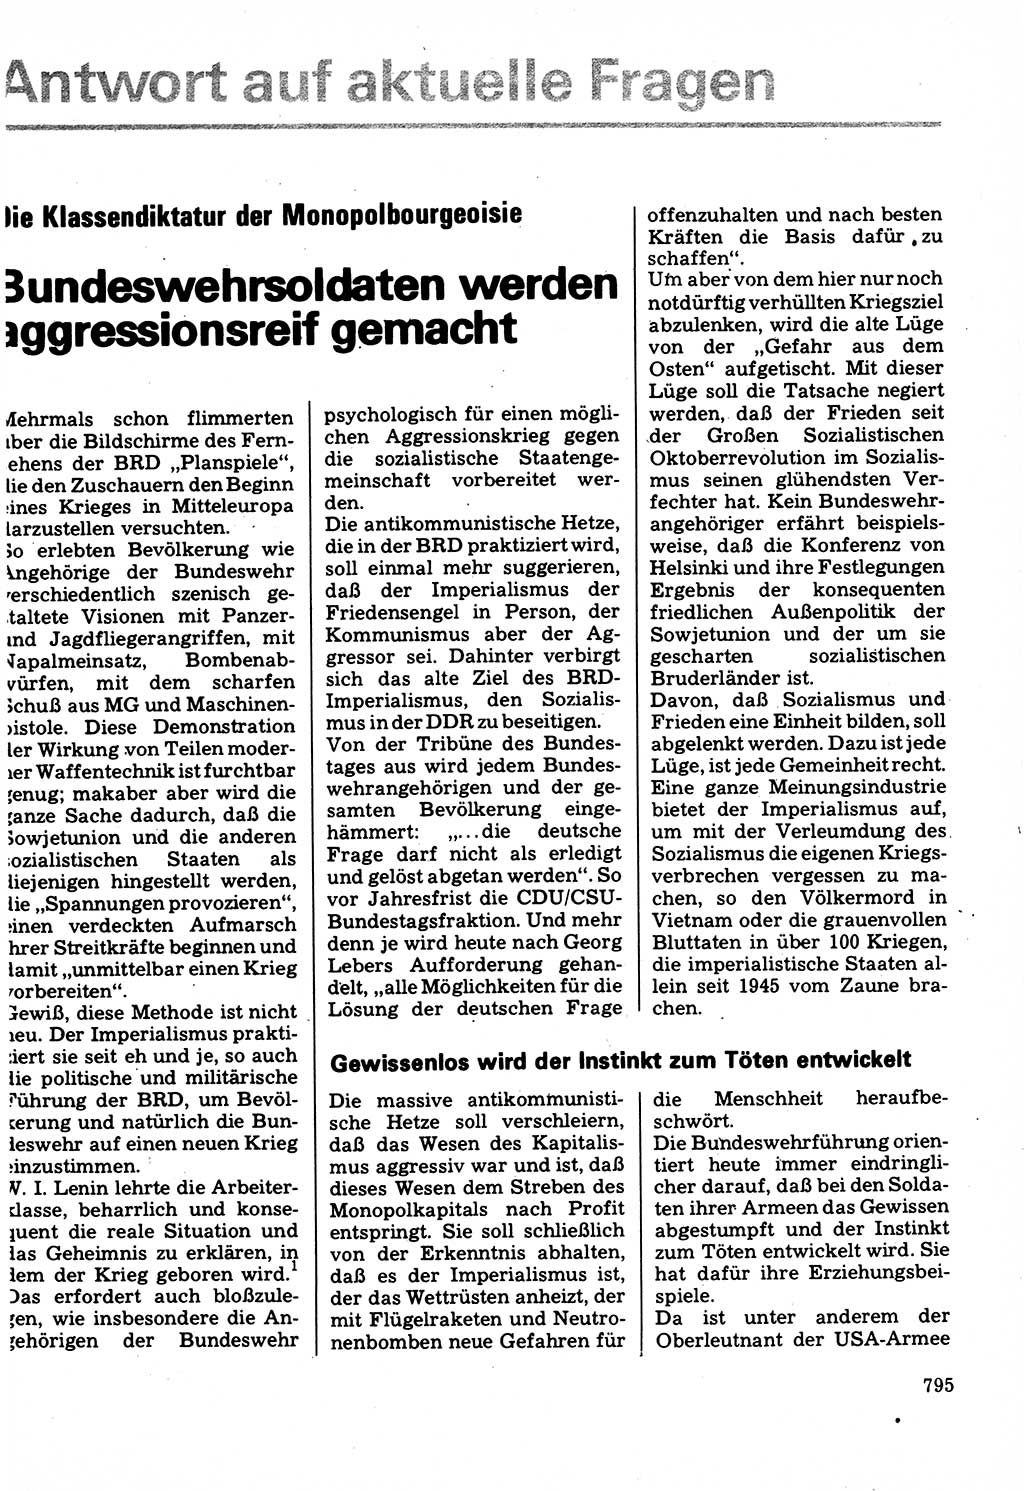 Neuer Weg (NW), Organ des Zentralkomitees (ZK) der SED (Sozialistische Einheitspartei Deutschlands) für Fragen des Parteilebens, 32. Jahrgang [Deutsche Demokratische Republik (DDR)] 1977, Seite 795 (NW ZK SED DDR 1977, S. 795)